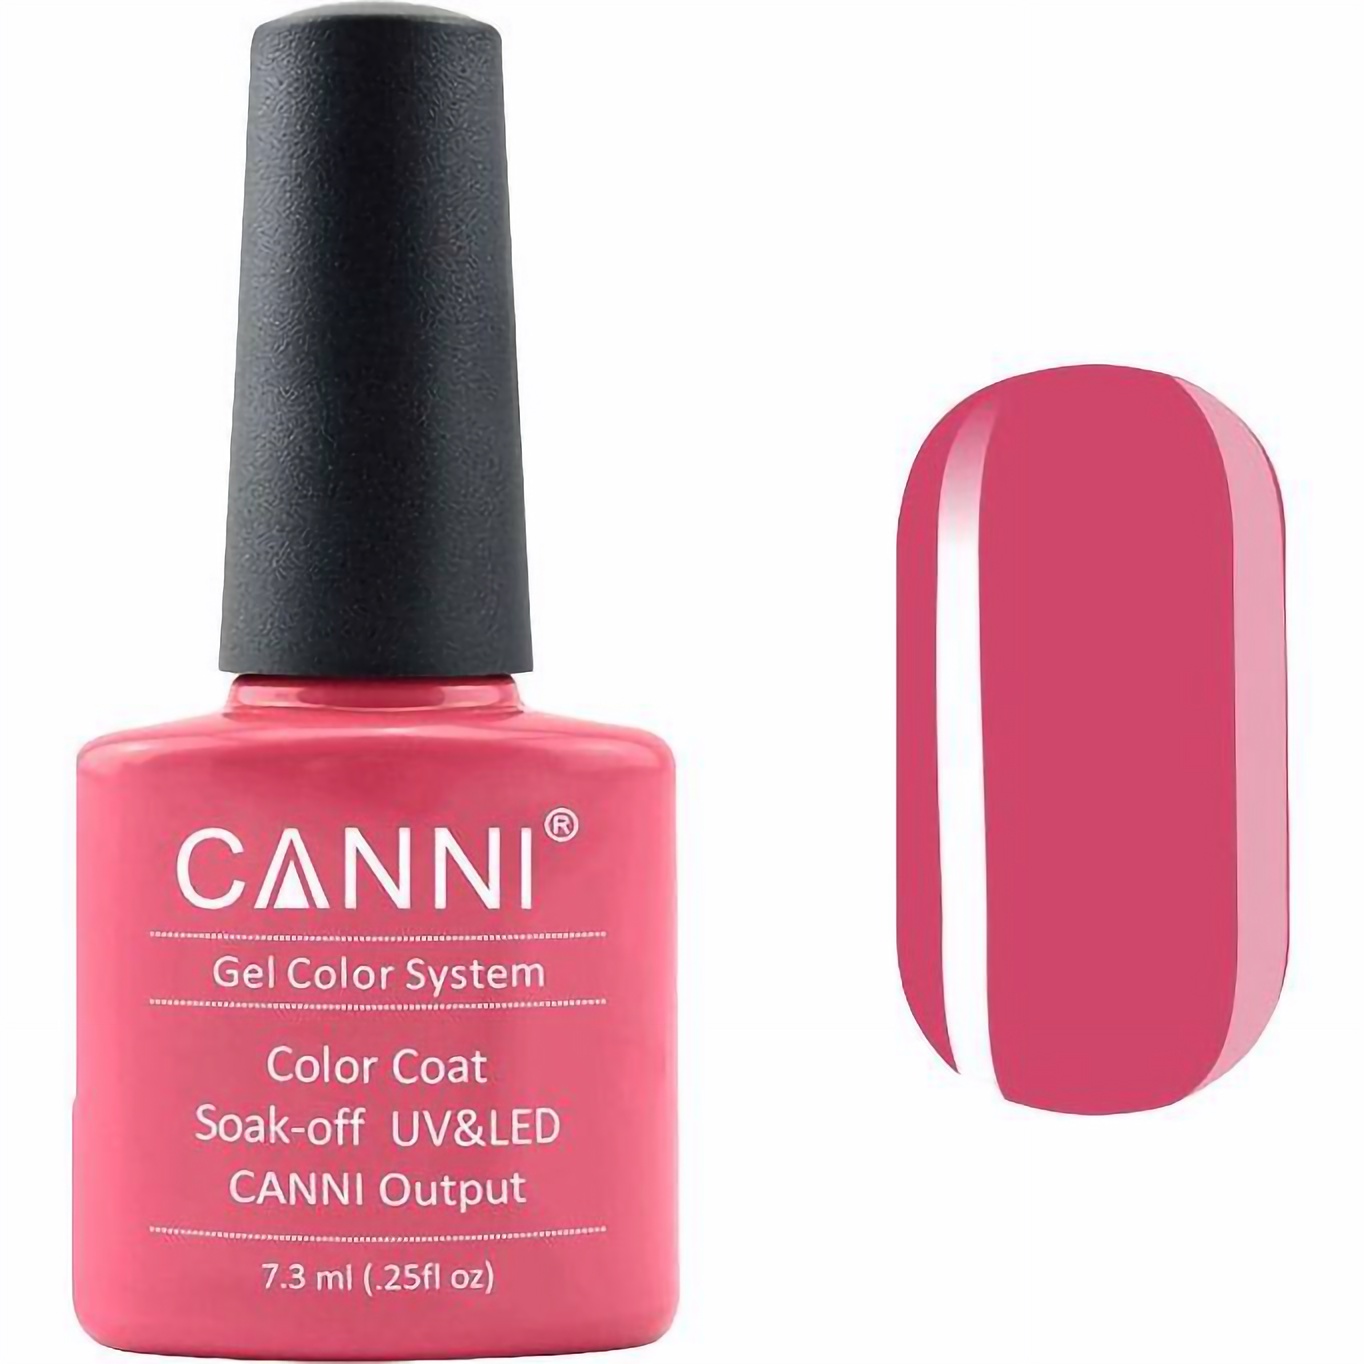 Гель-лак Canni Color Coat Soak-off UV&LED 121 темно-лососевый 7.3 мл - фото 1